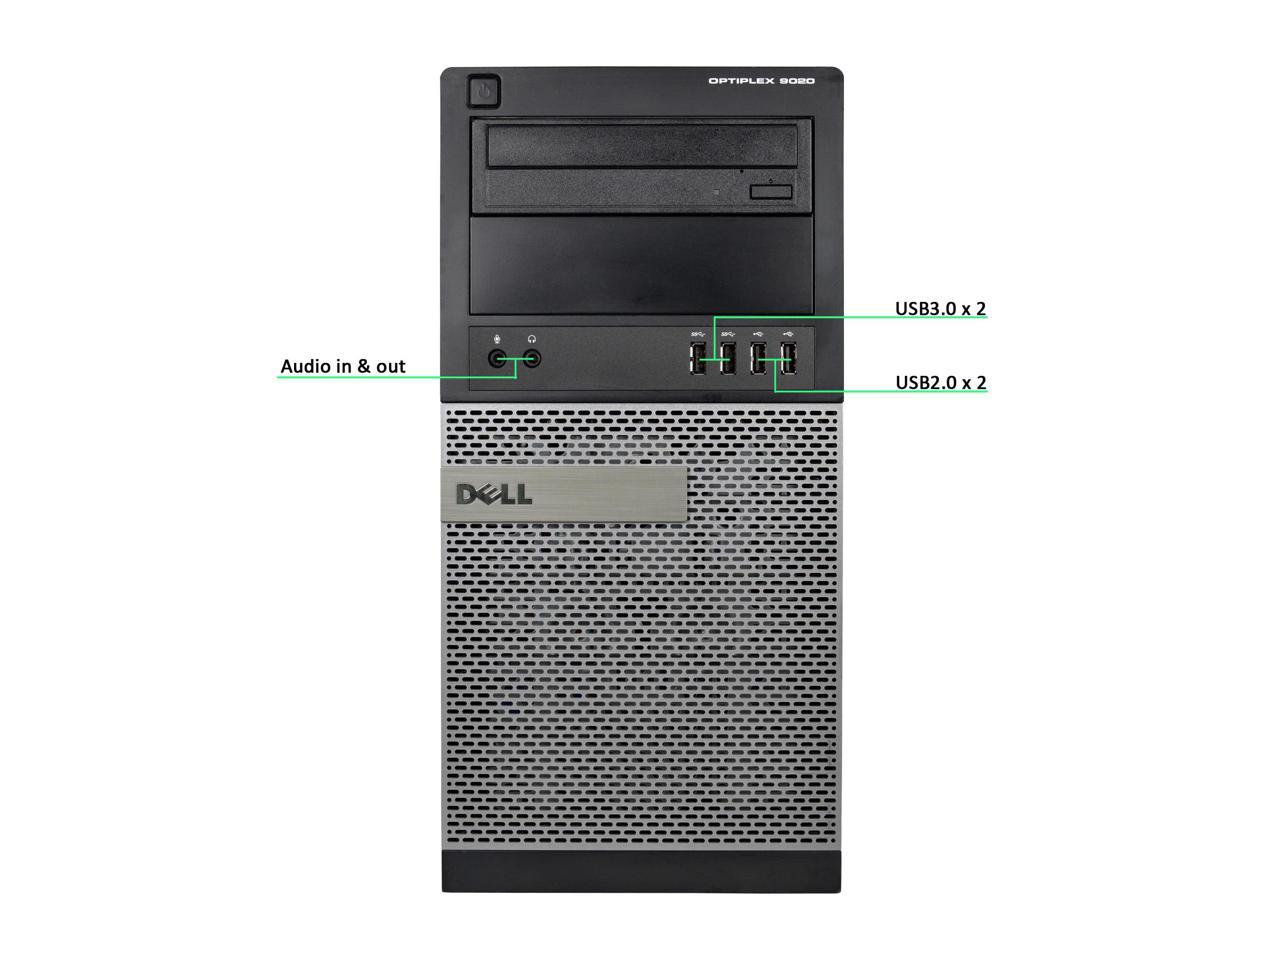 Dell Optiplex 9020 Mini-Tower Desktop, Quad Core i7 4770 3.4Ghz, 16GB DDR3 RAM, 512GB SSD Hard Drive, Windows 10 Pro